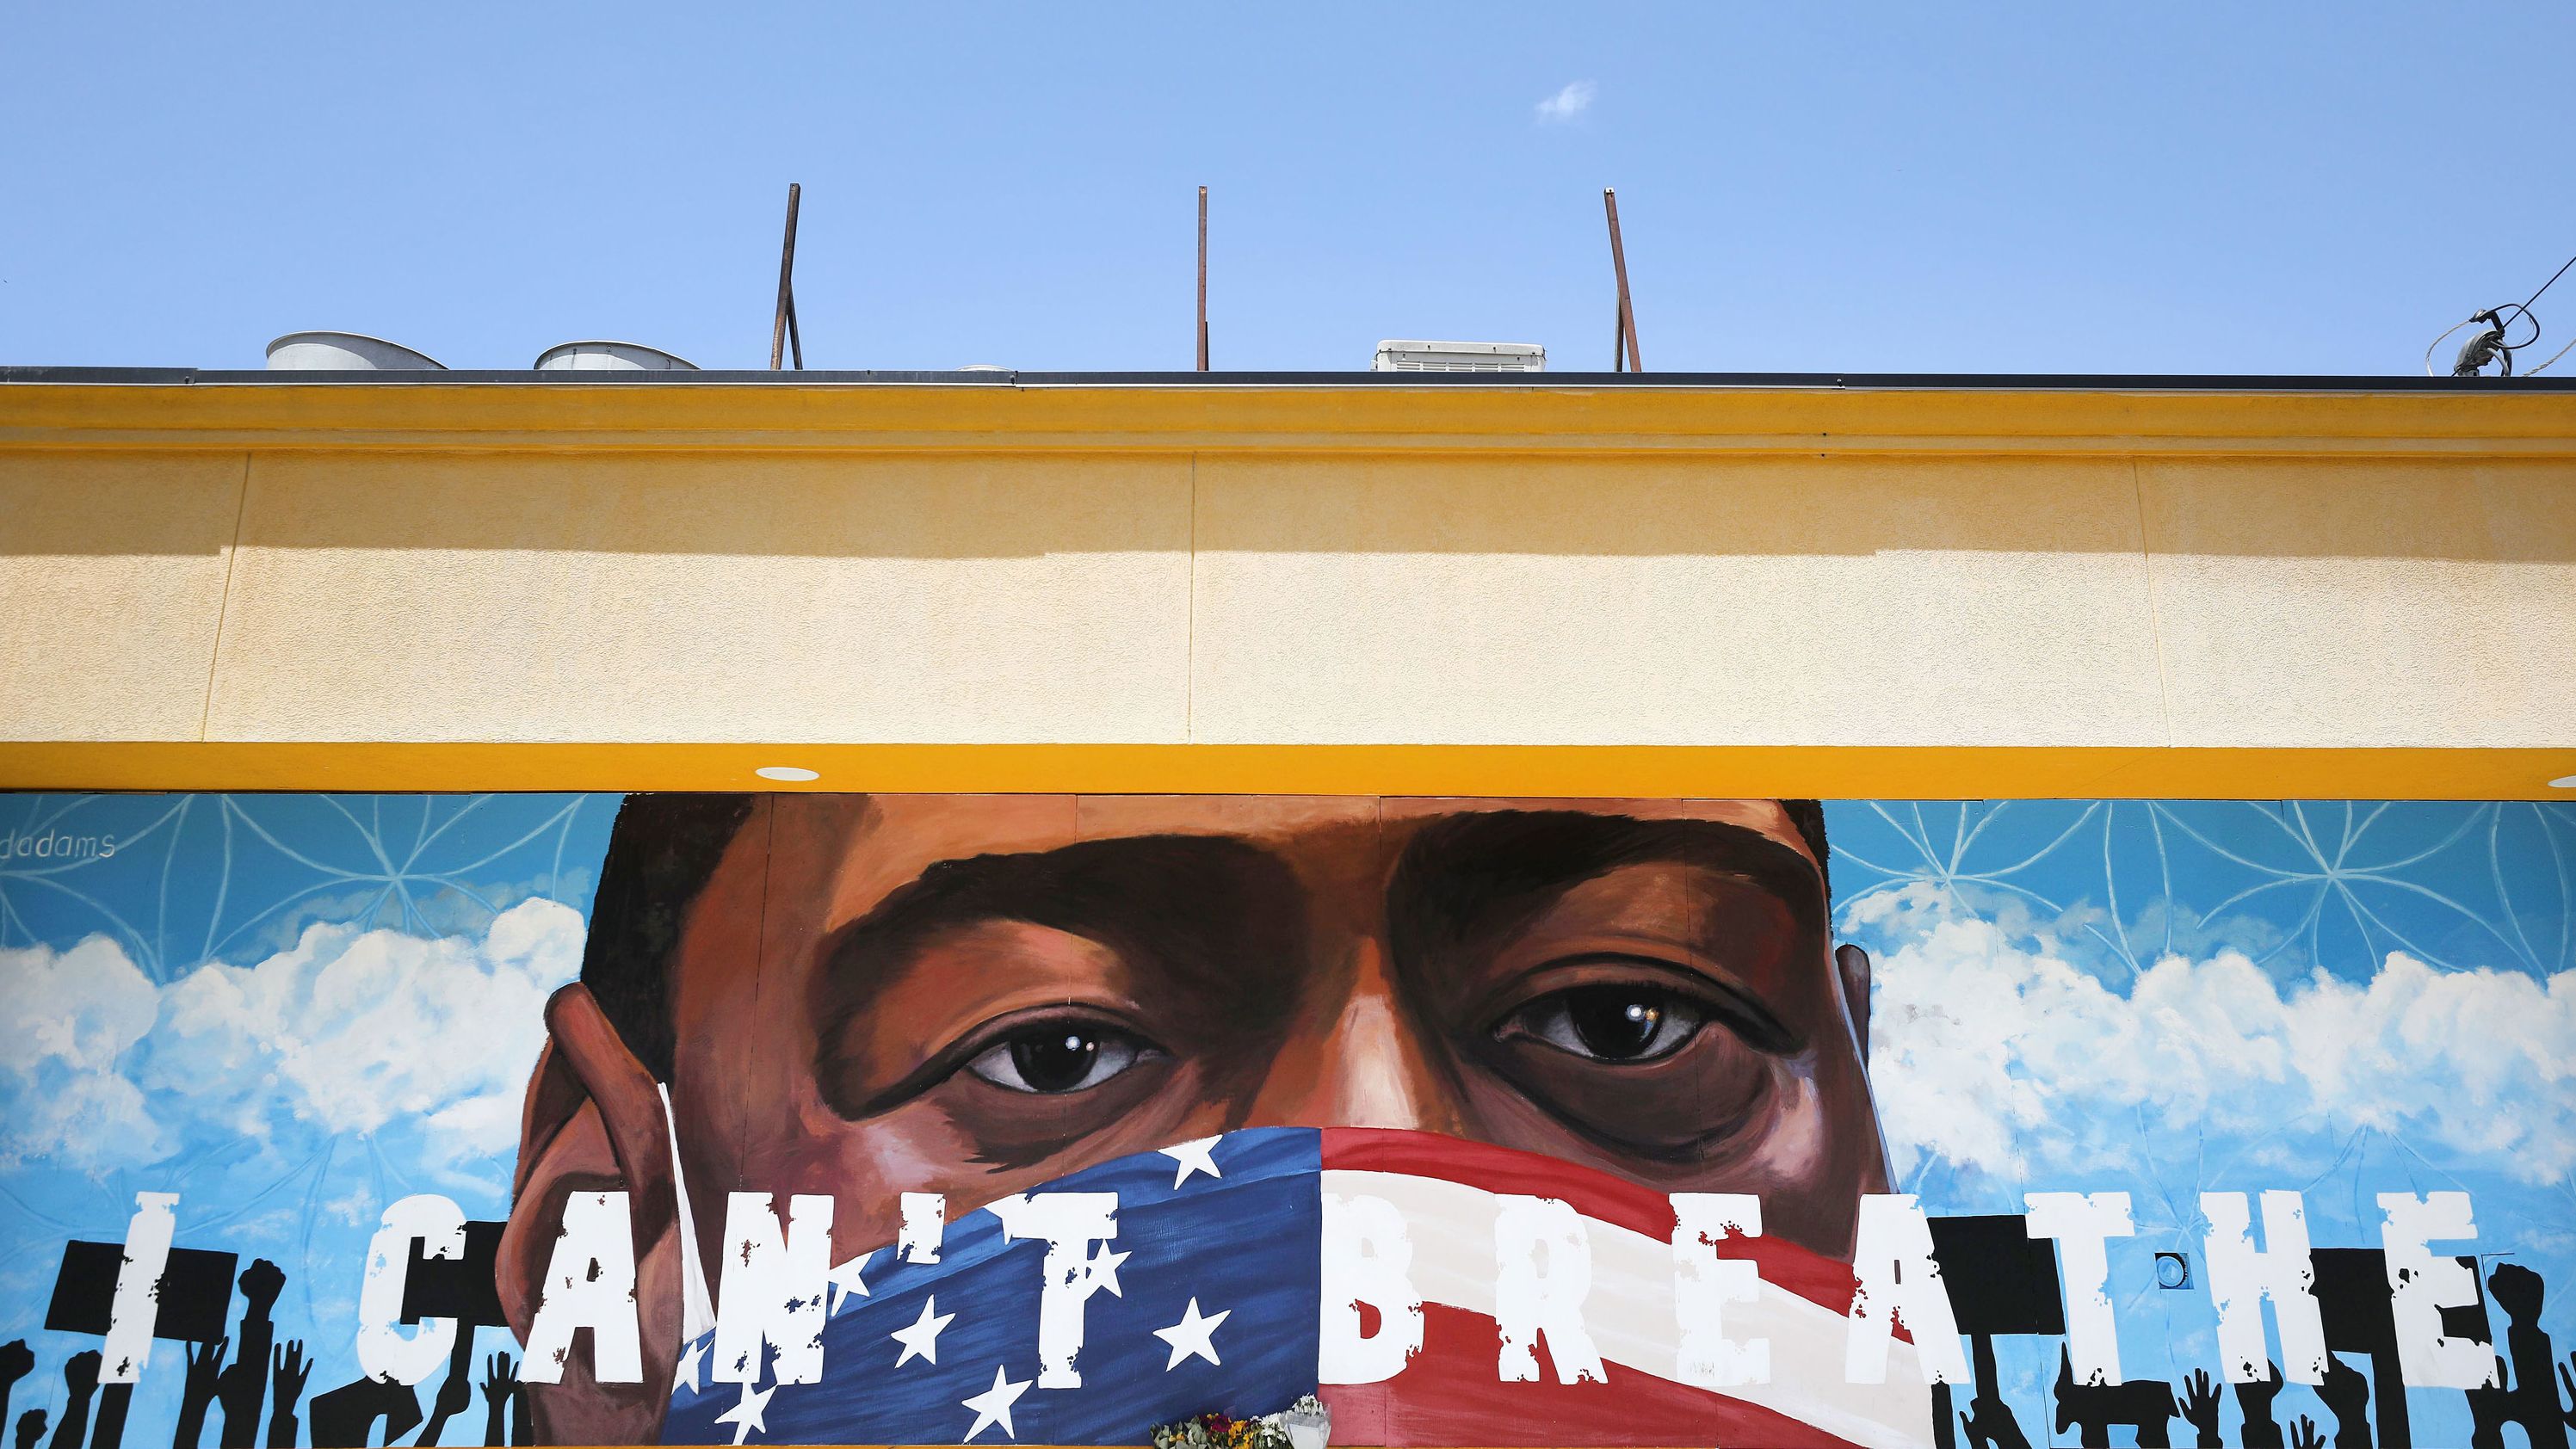 This Floyd mural was painted by Reginald Adams in Floyd's hometown of Houston.